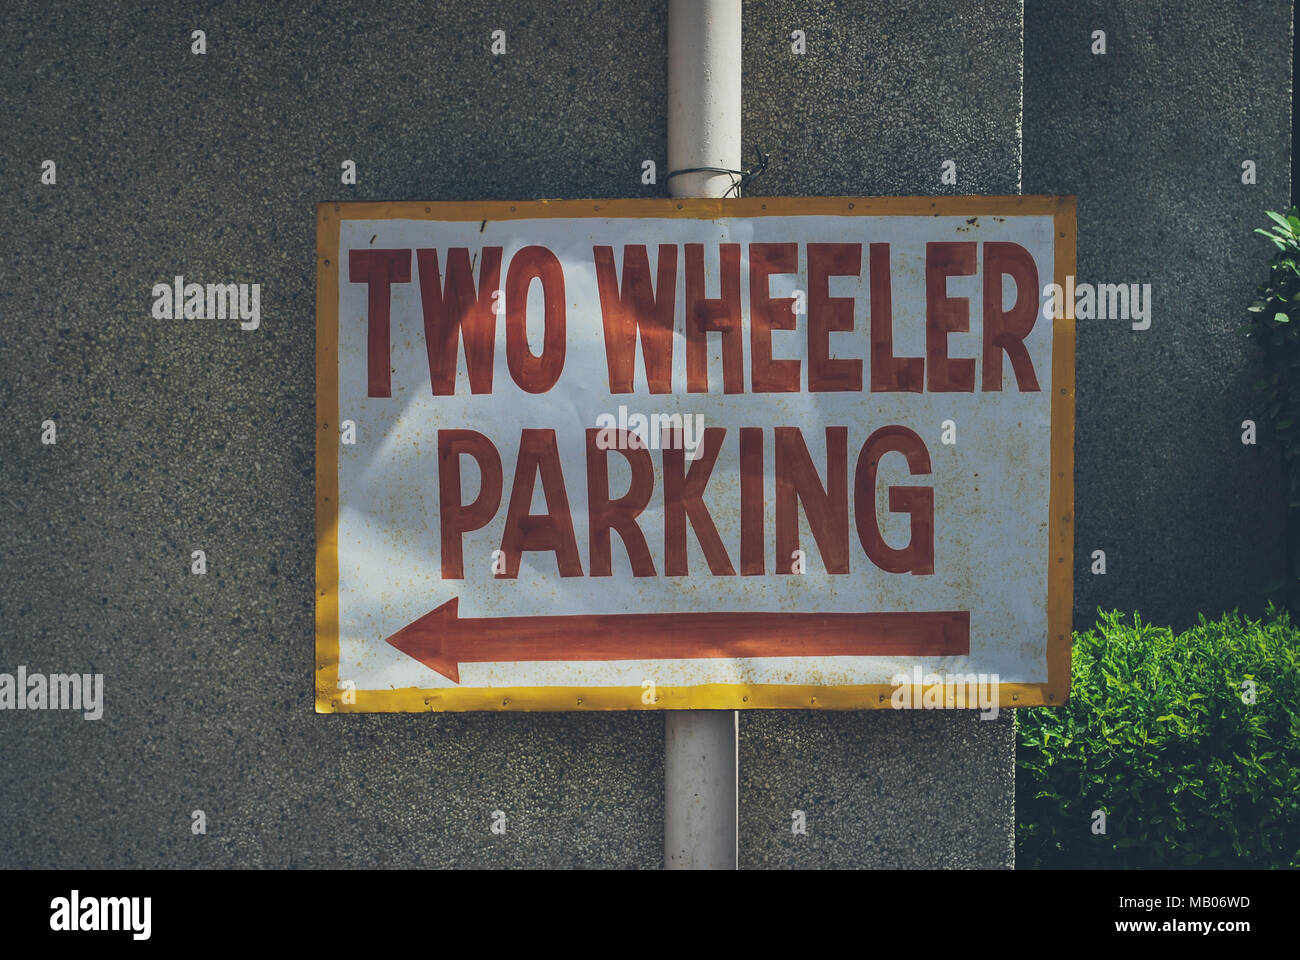 Two wheeler Parking signage Stock Photo